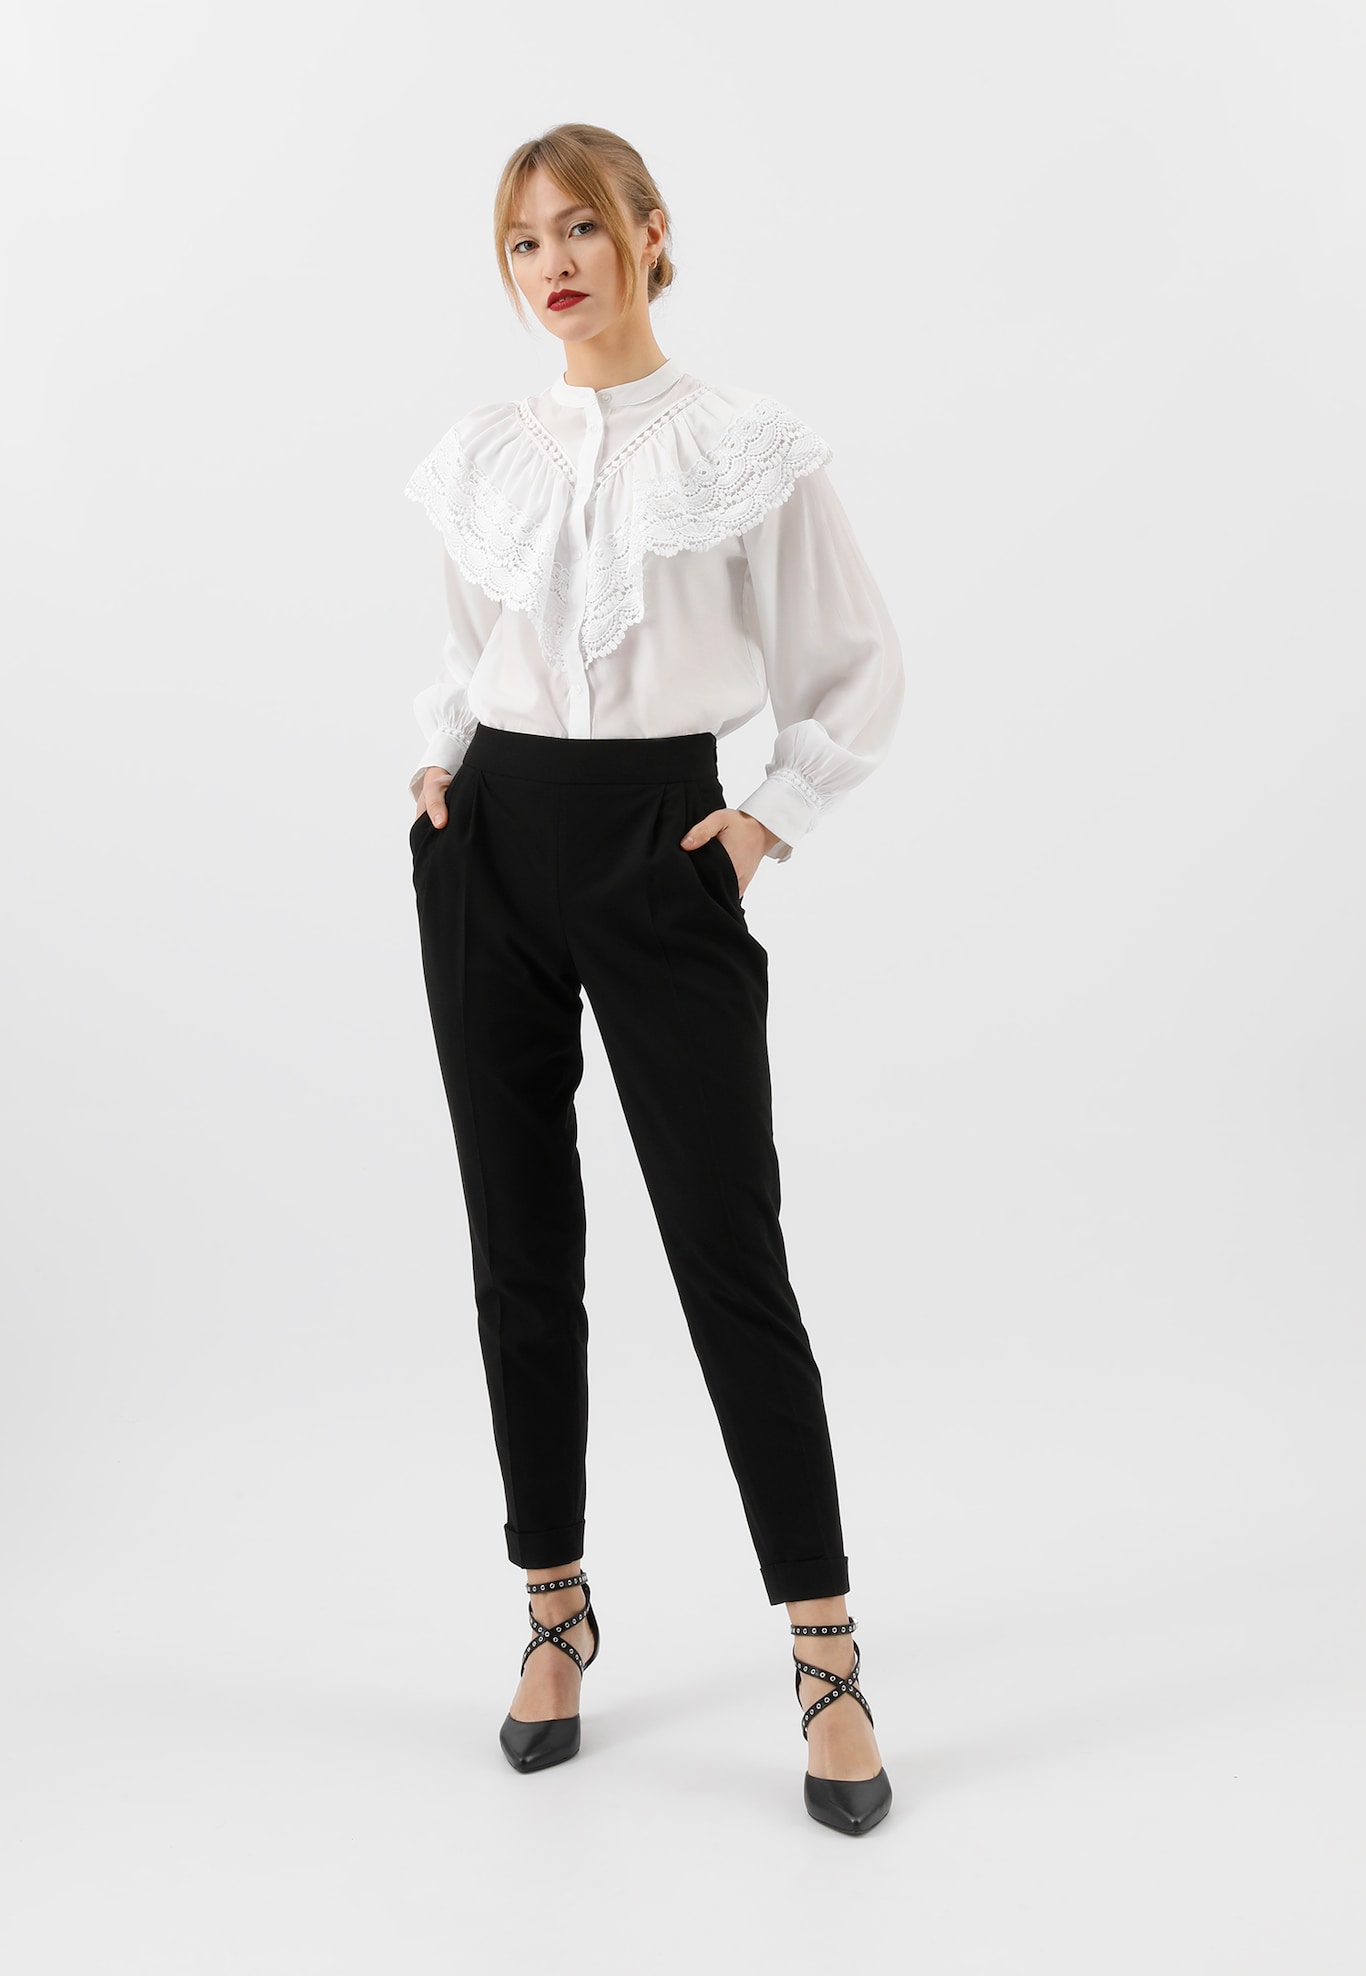 Damska stylizacja w stylu minimalistycznym z czarnymi spodniami i białą koszulą